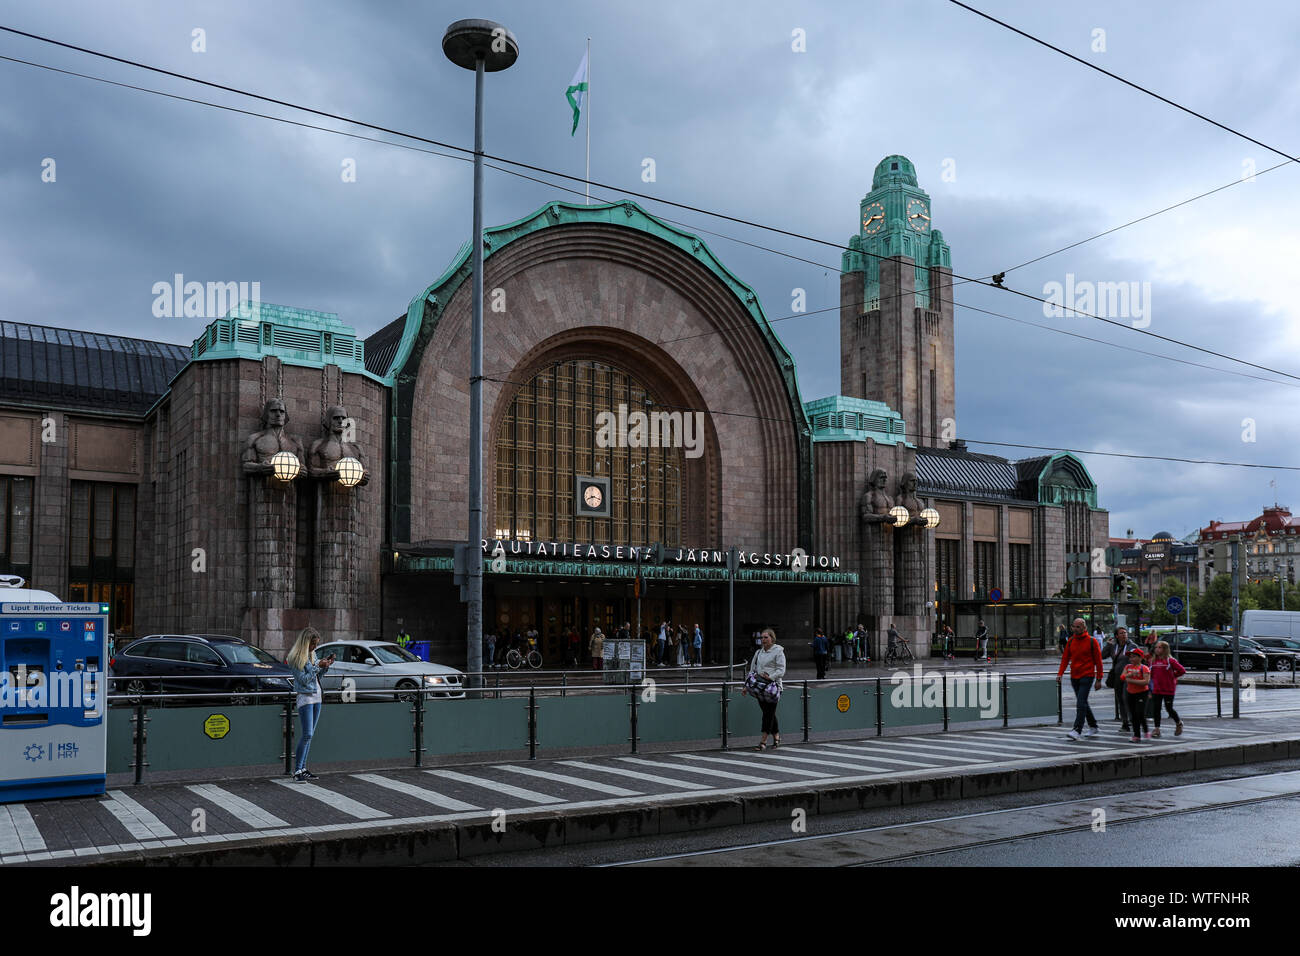 La gare centrale après de fortes pluies dans la région de Helsinki, Finlande Banque D'Images